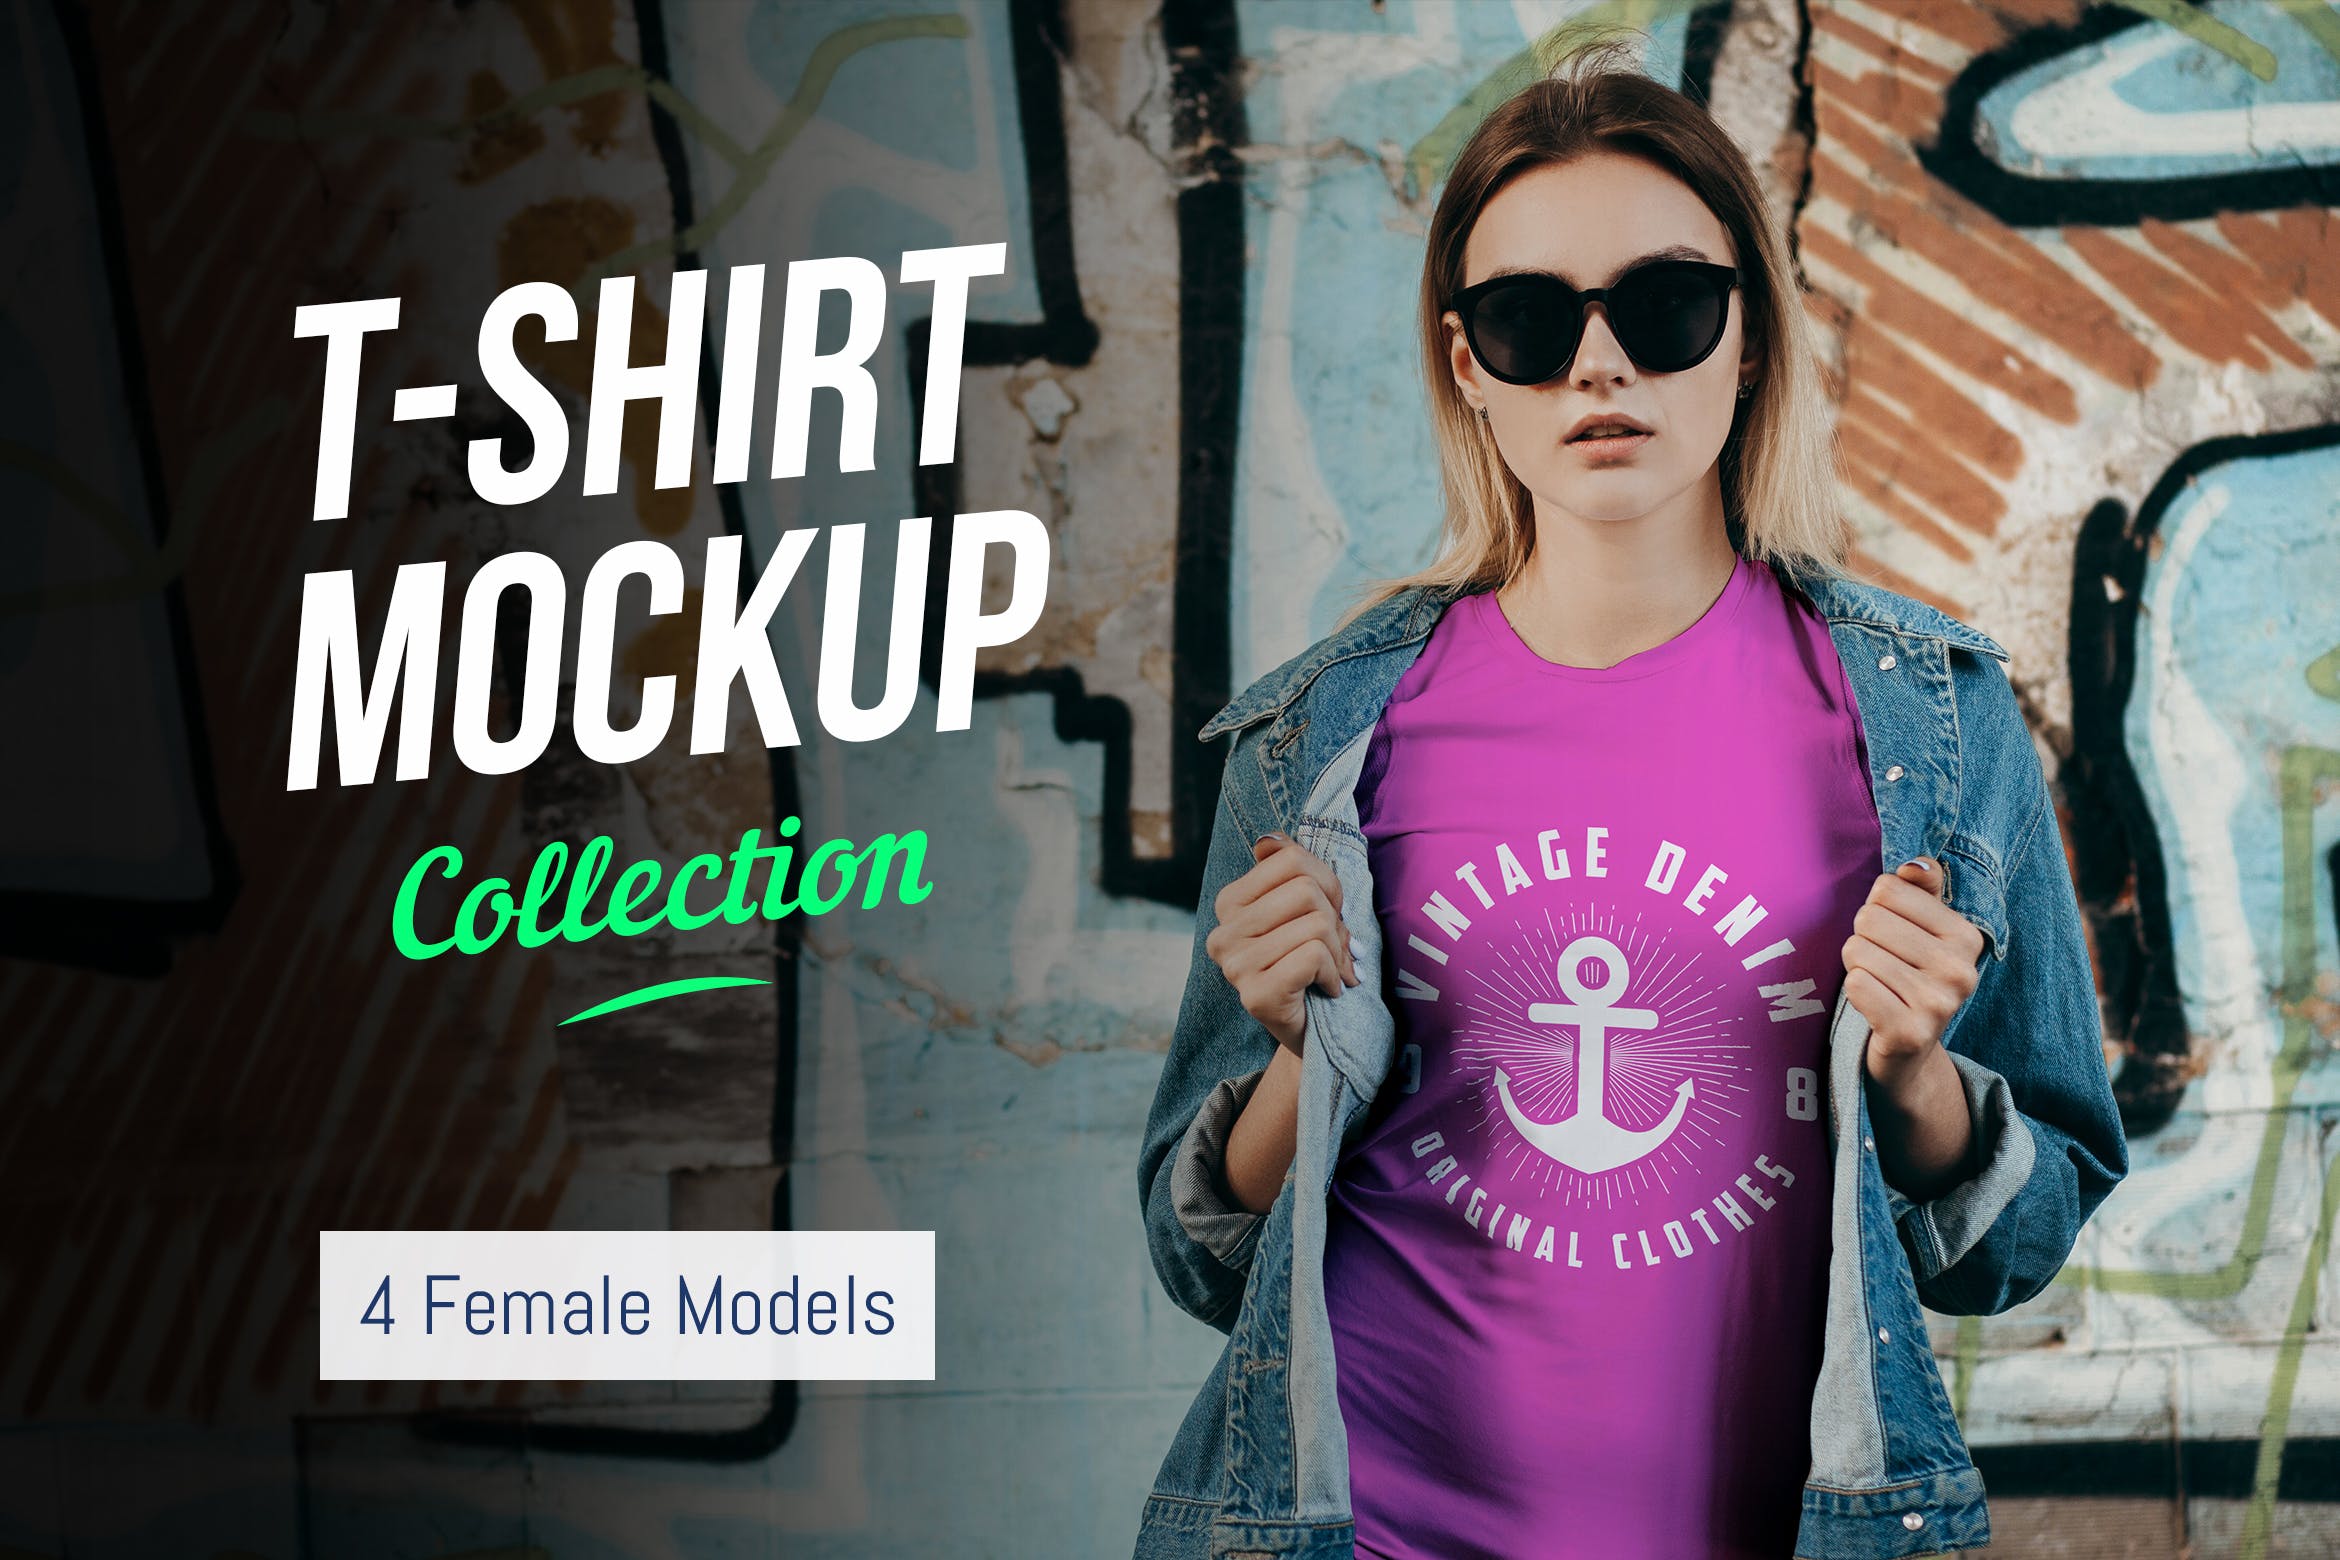 女士T恤印花设计效果图样机第一素材精选合集v02 T-Shirt Mockup Collection 02插图